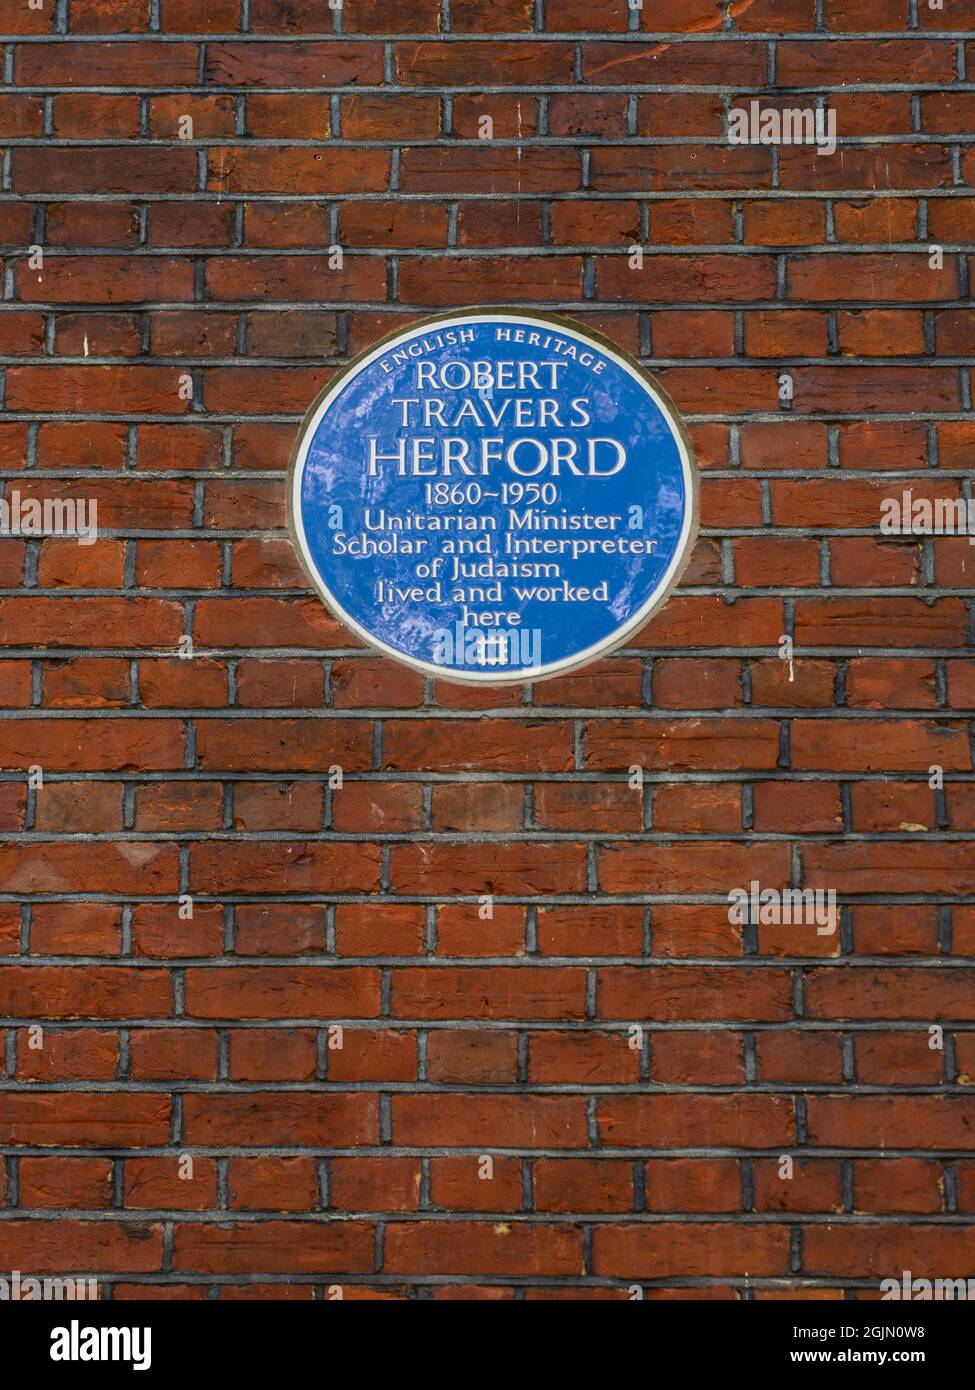 Robert travers plaque bleue Herford - ROBERT TRAVERS HERFORD 1860-1950 le ministre unitaire Scholar et interprète du judaïsme a vécu et travaillé ici Banque D'Images